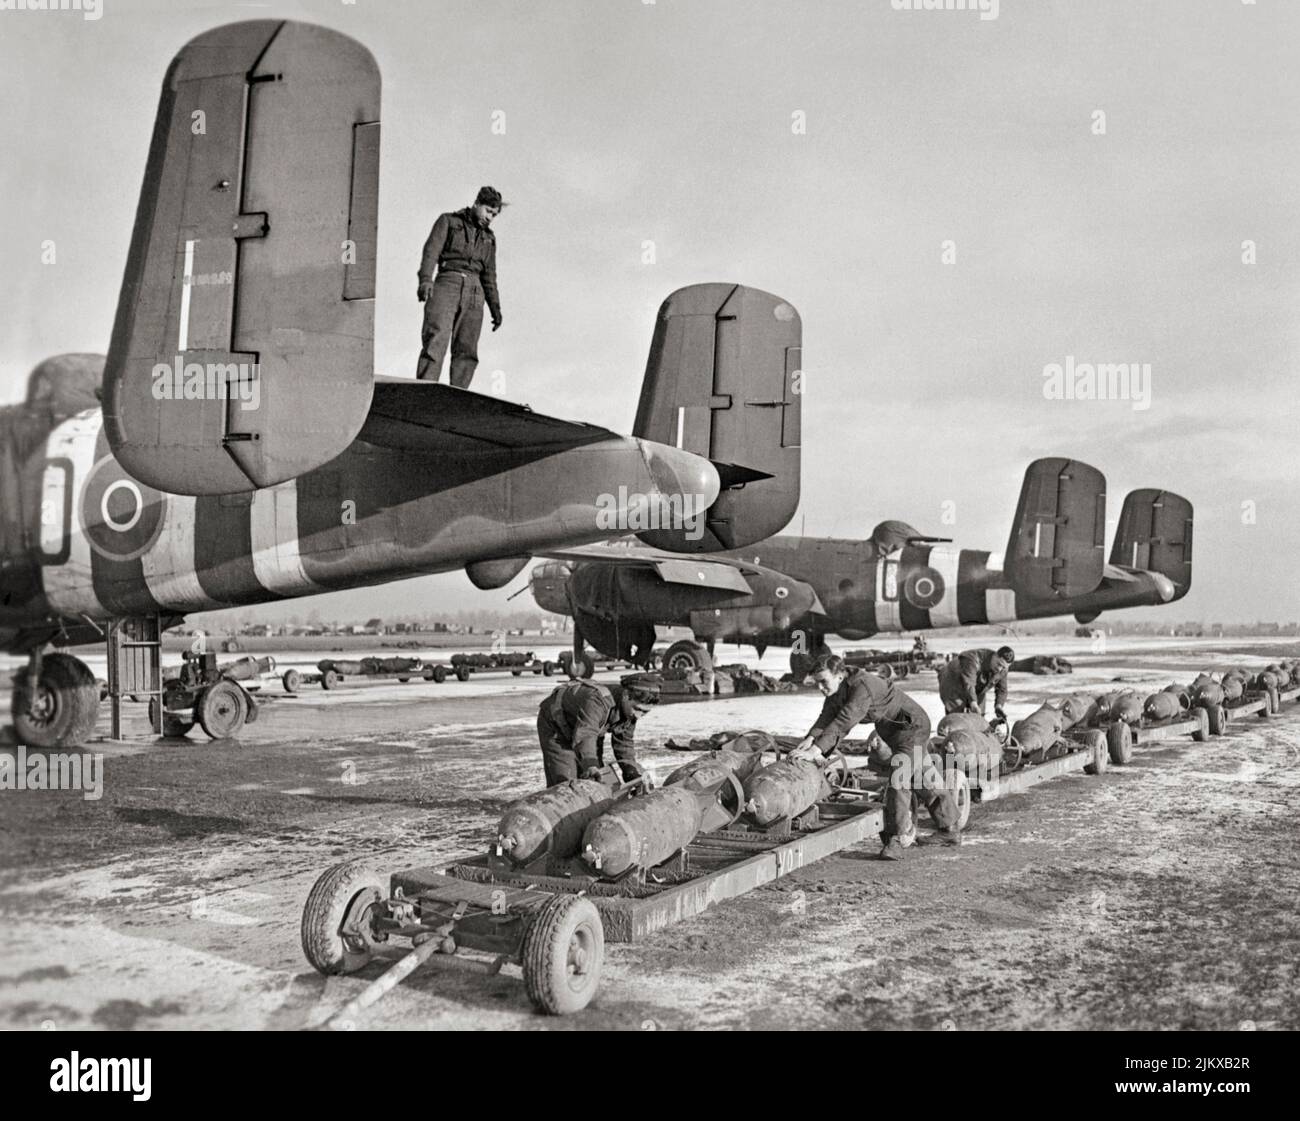 La RAF y los equipos de tierra navales holandeses se preparan para cargar bombas MC de 500 libras en North American Mitchell Mark IIS del Escuadrón Nº 98 de la RAF, durante condiciones invernales en Bélgica. El B-25 Mitchell norteamericano fue un bombardero mediano introducido en 1941 y utilizado por muchas fuerzas aéreas aliadas. Foto de stock